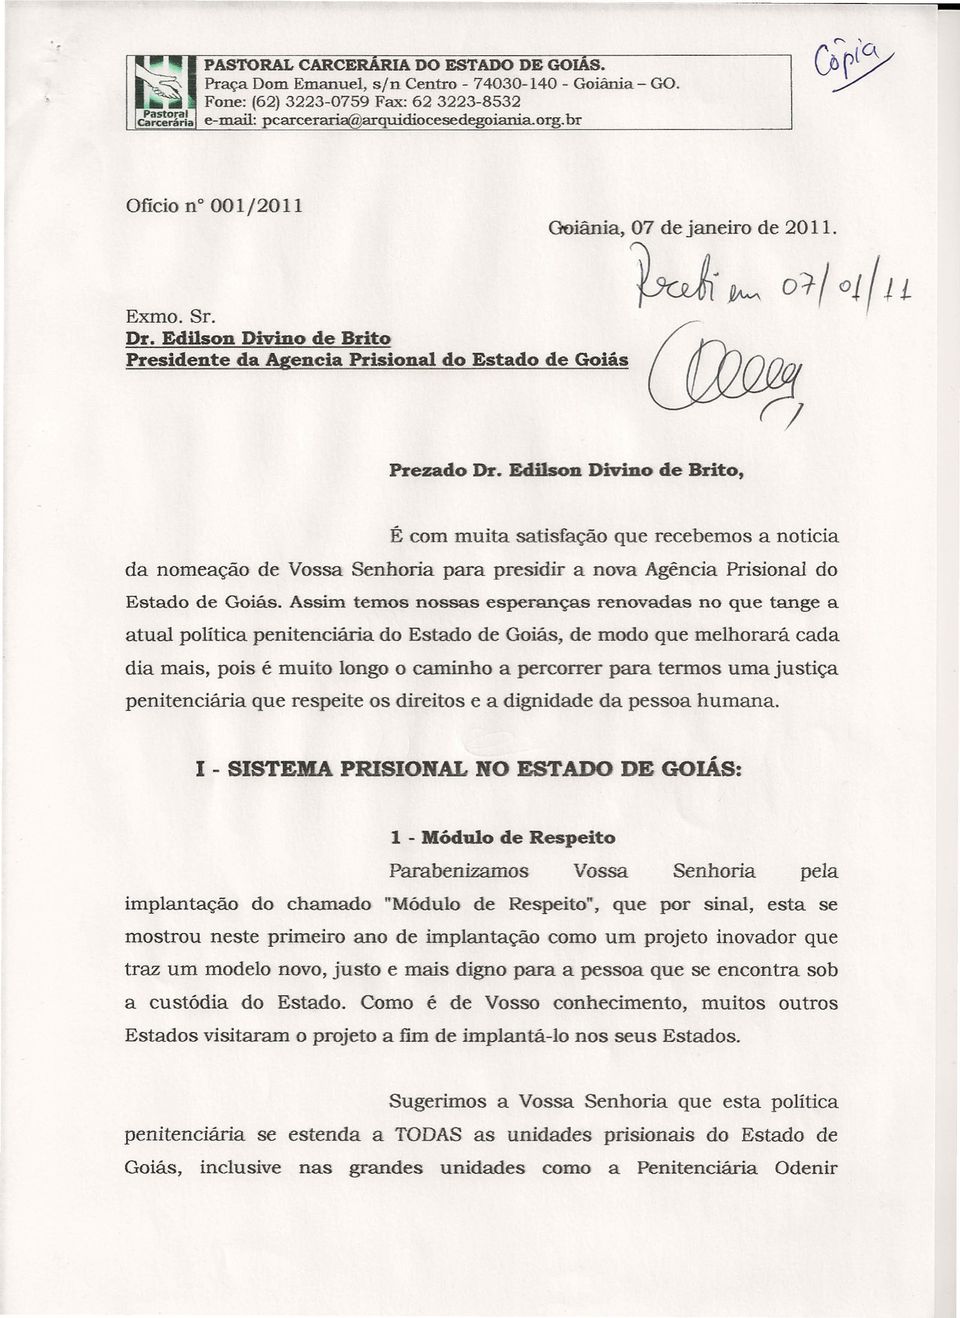 Edilson Divino de Brito, É com muita satisfação que recebemos a noticia da nomeação de Vossa Senhoria para presidir a nova Agência Prisional do Estado de Goiás.